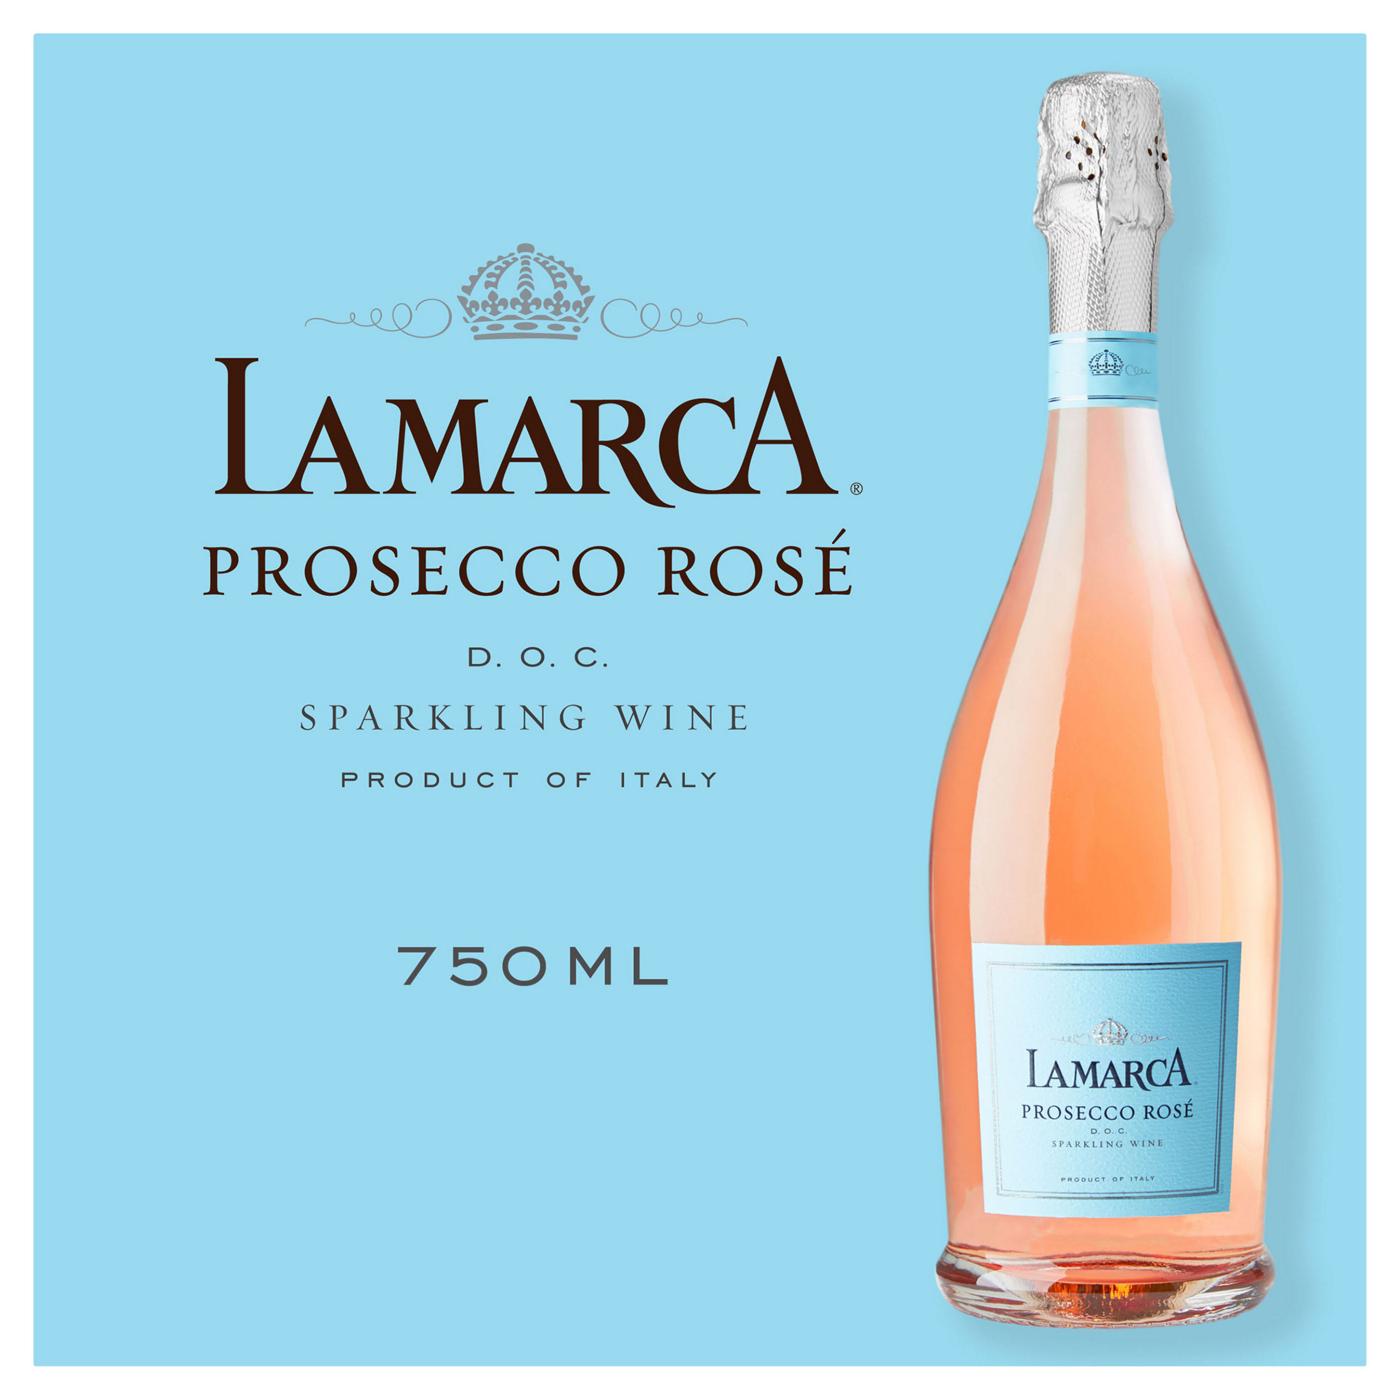 La Marca Prosecco Rosé Sparkling Wine; image 4 of 6